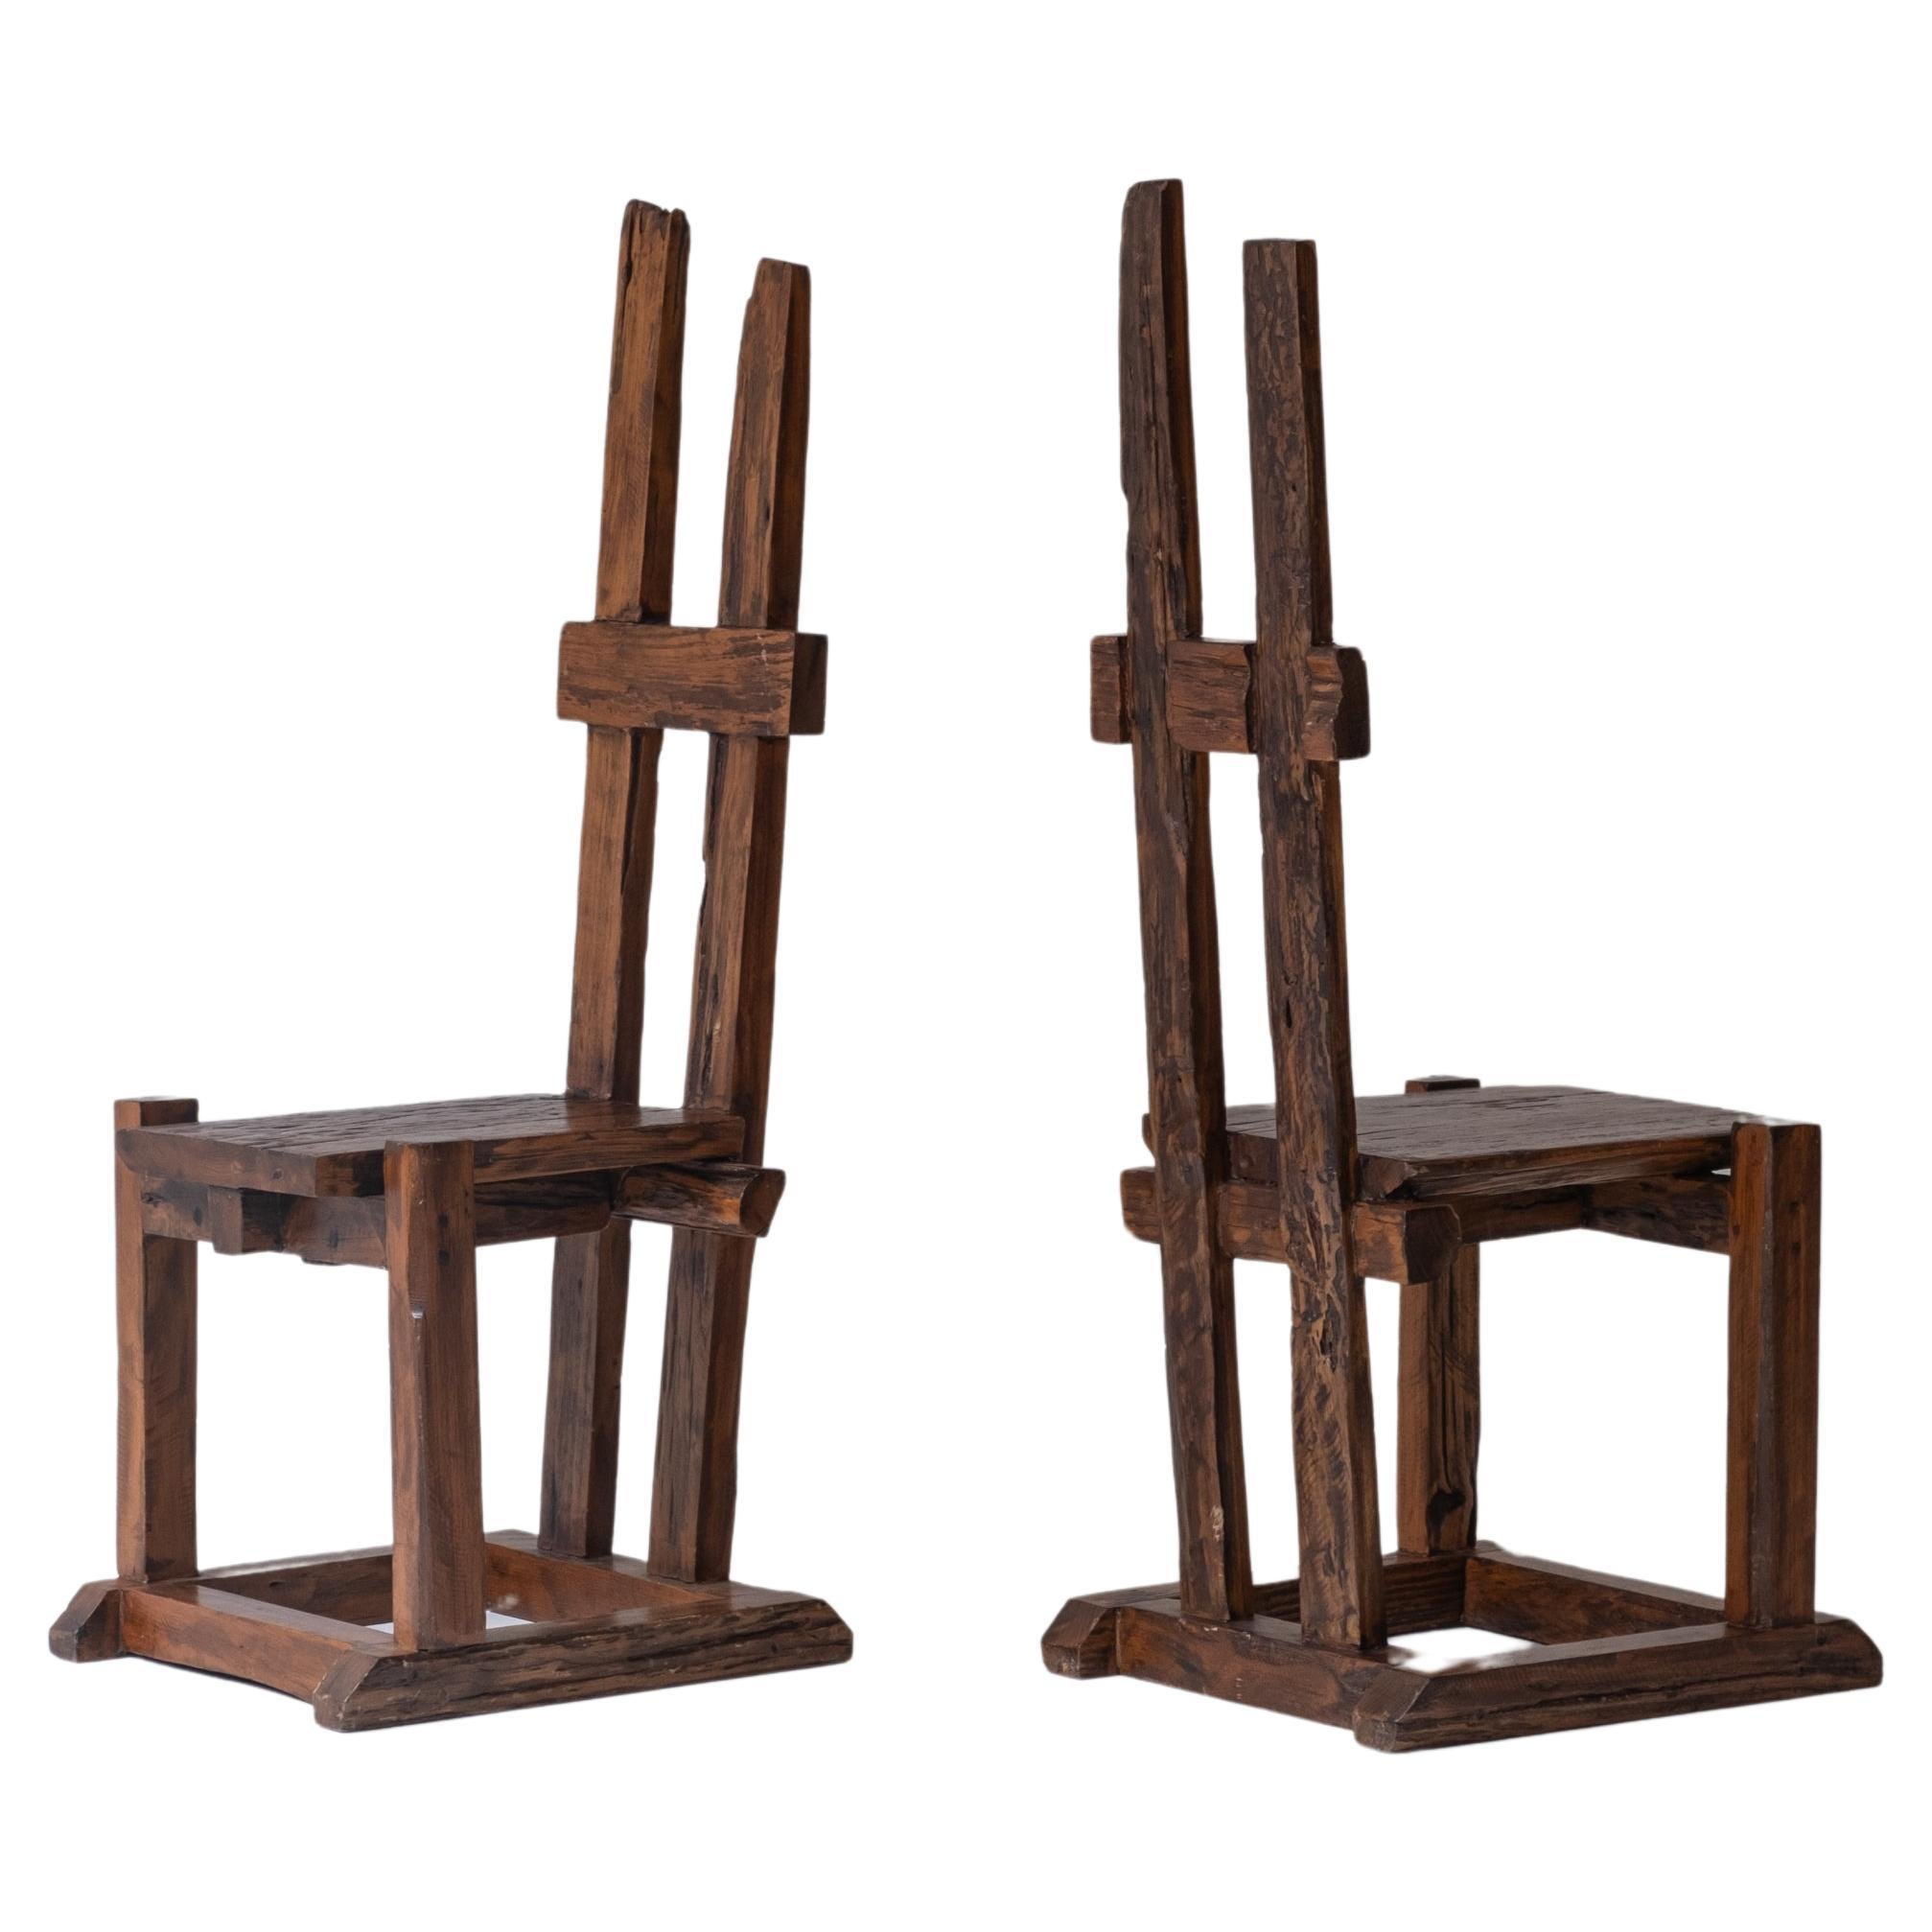 Un ensemble de chaises primitives à haut dossier, conçues et fabriquées dans les années 50